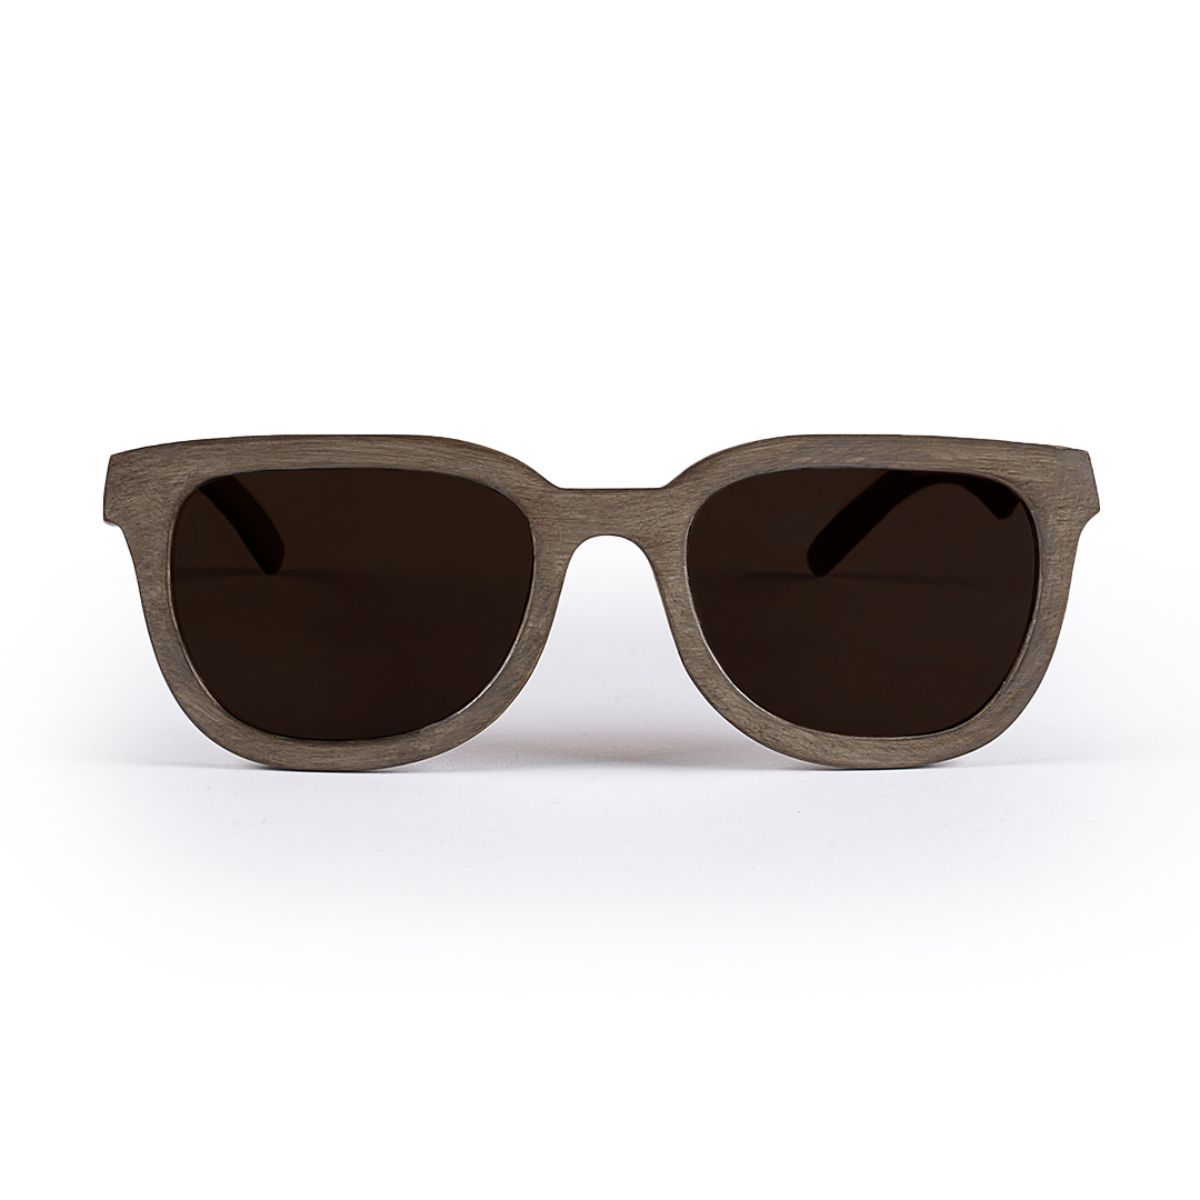 Aggregate 79+ sasha sunglasses latest